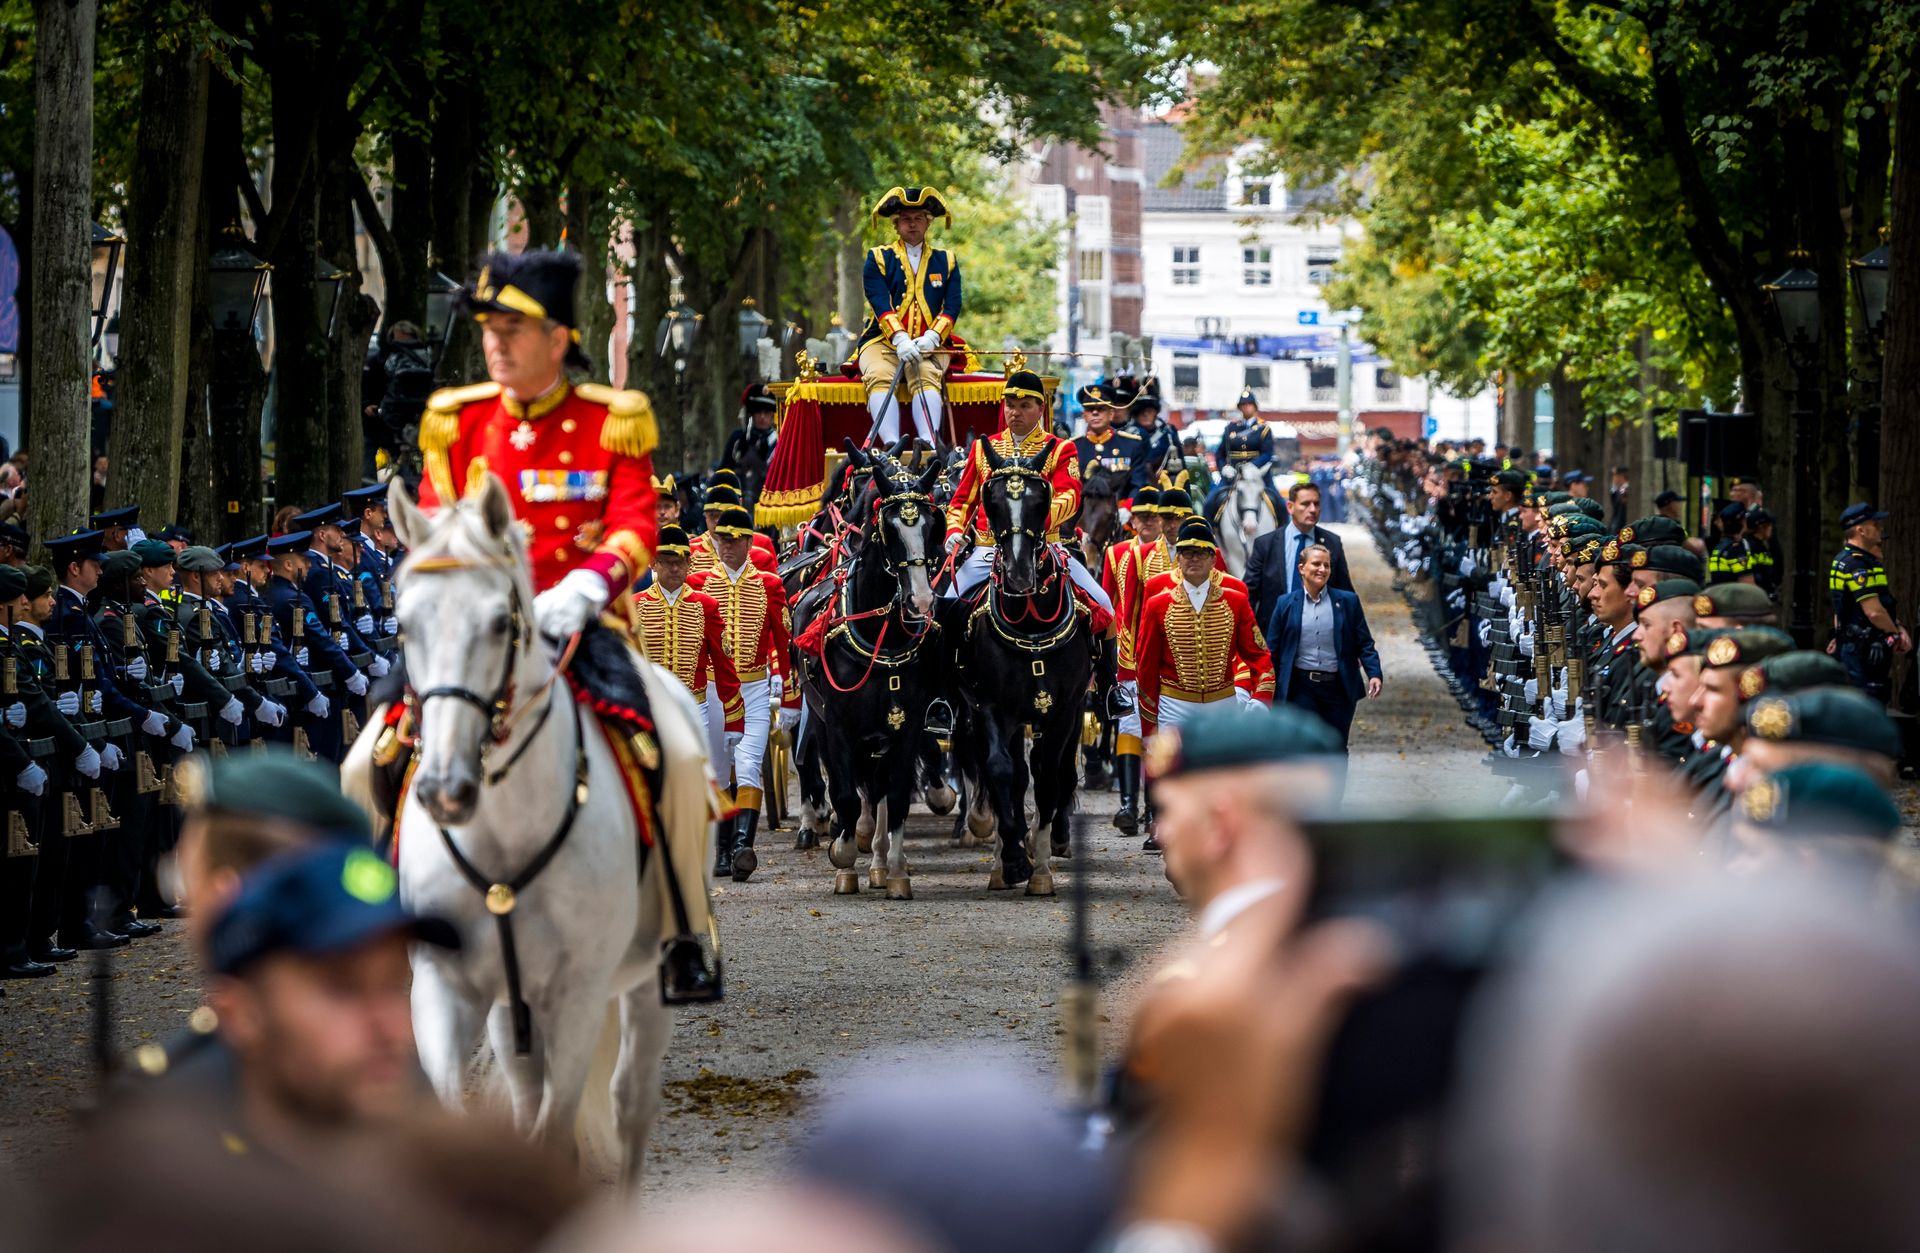 Prinsjesdag: Glazen koets trekt door Haagse binnenstad